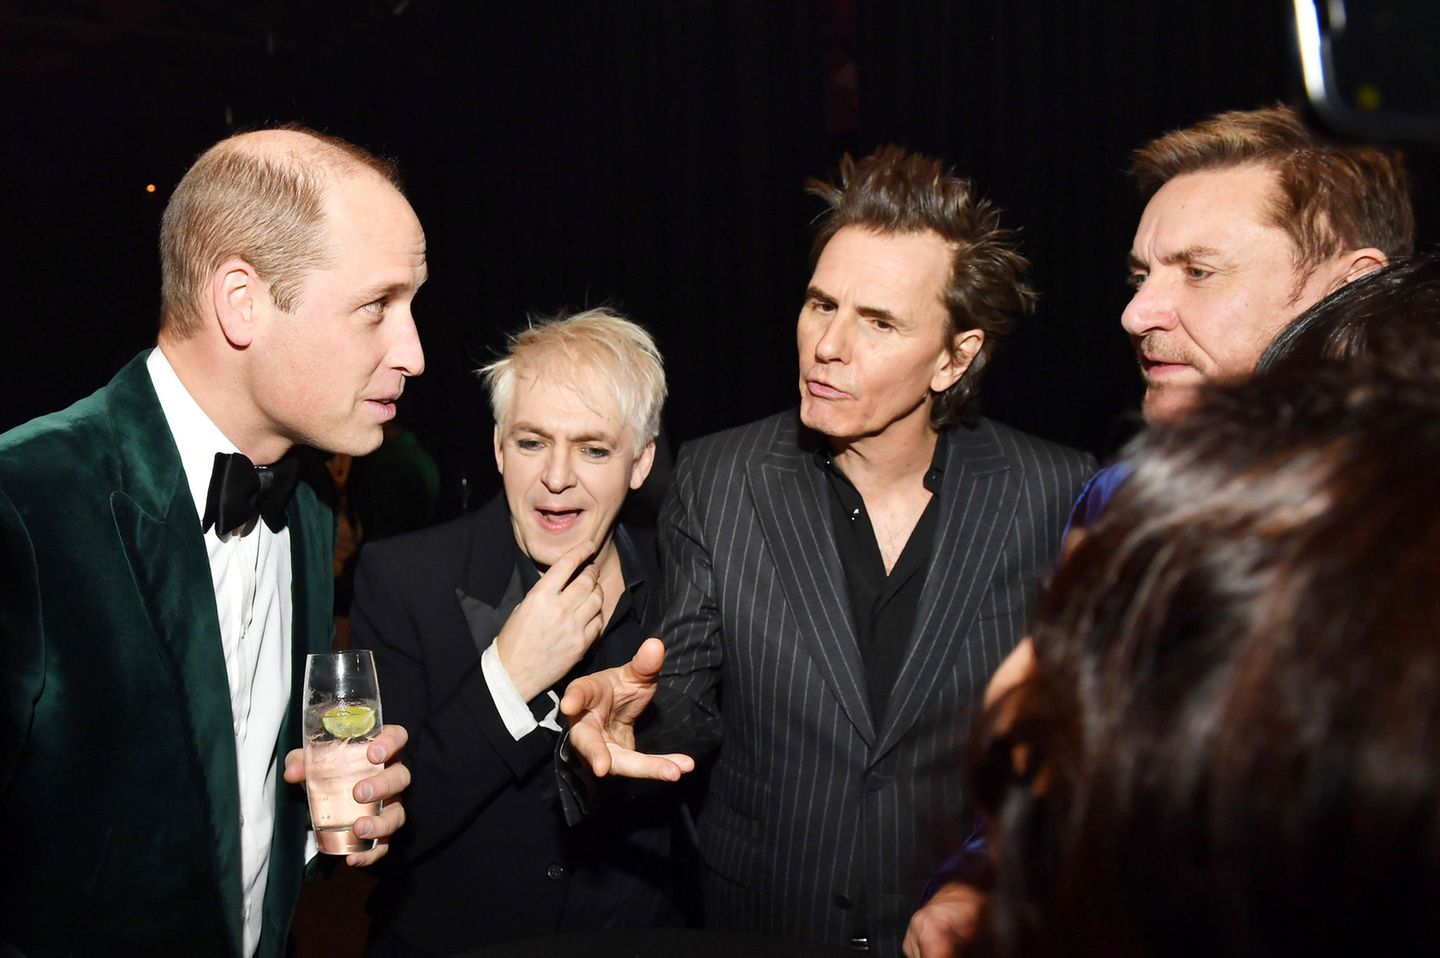 Auch für eine nette Unterhaltung mit der britischen Popband Duran Duran findet Prinz William während der Charity-Veranstaltung im Londoner Roundhouse Zeit.